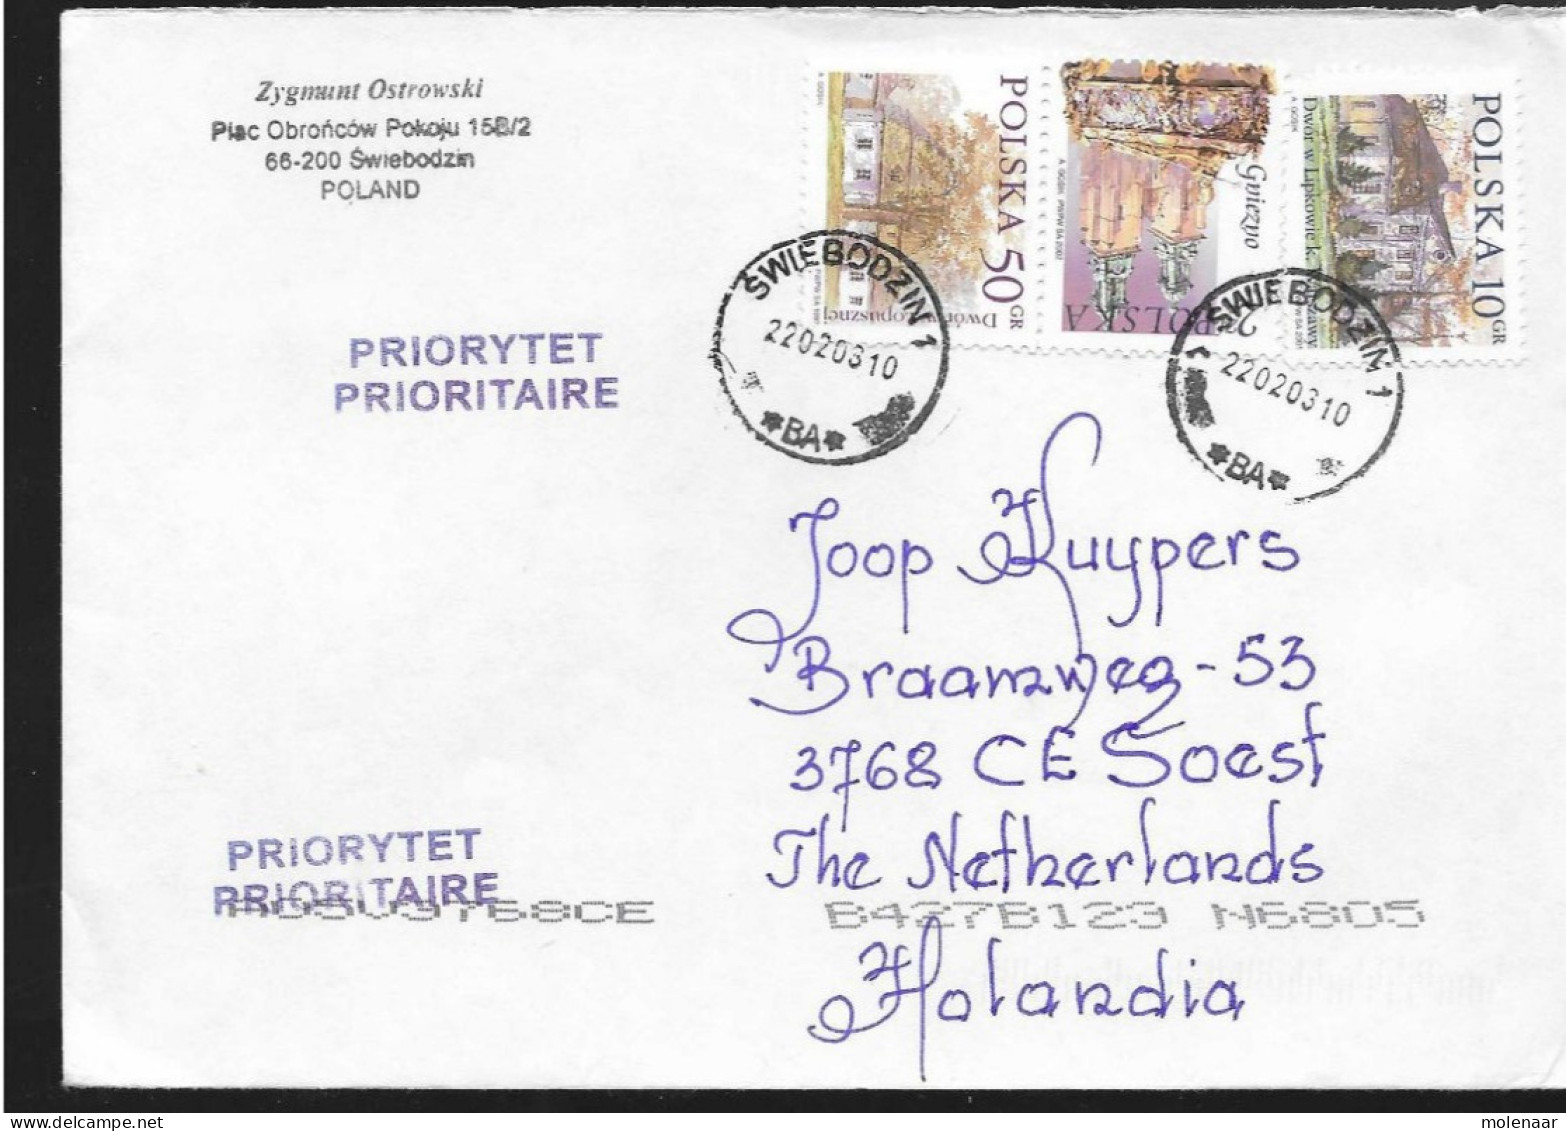 Postzegels > Europa > Polen > 1944-.... Republiek > 2001-10 >brief Ui 2003 Met 3 Postzegels (17119)17118 - Storia Postale